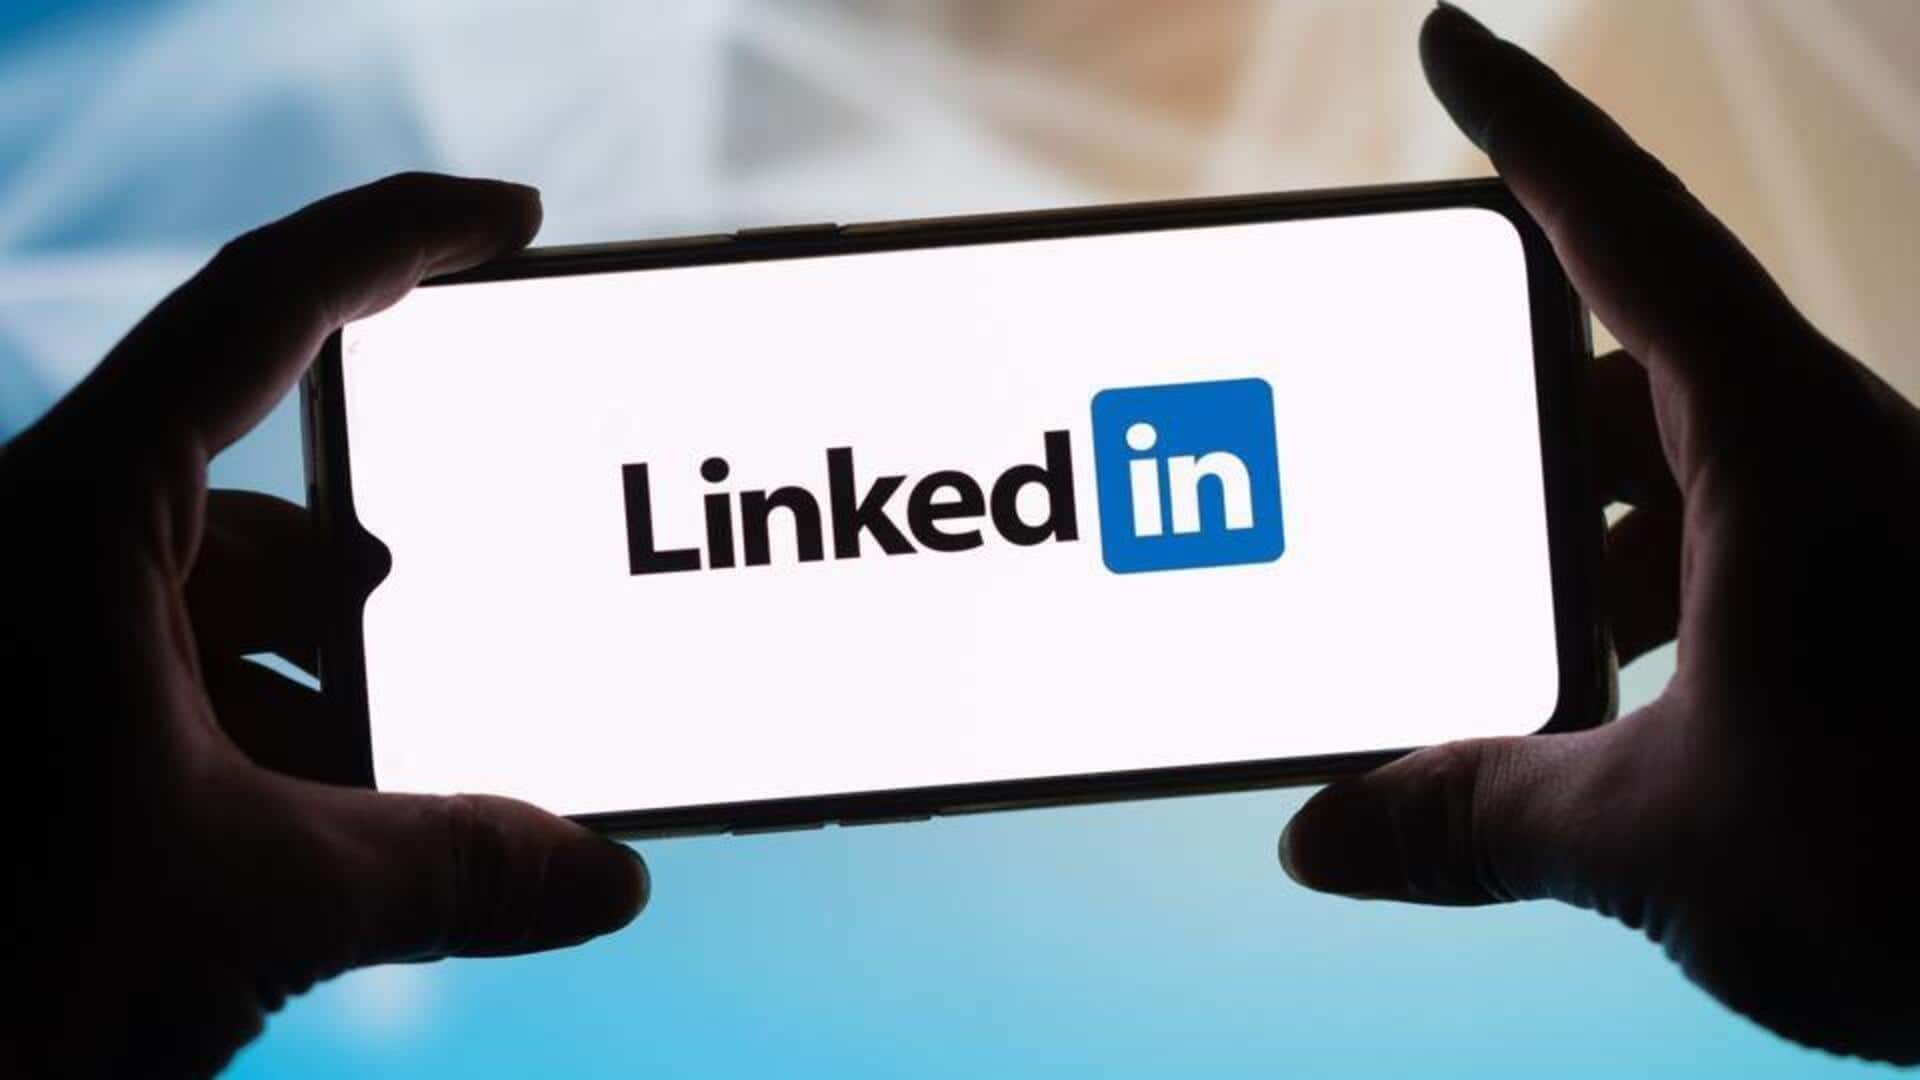 LinkedIn halts targeted ads based on group data in EU